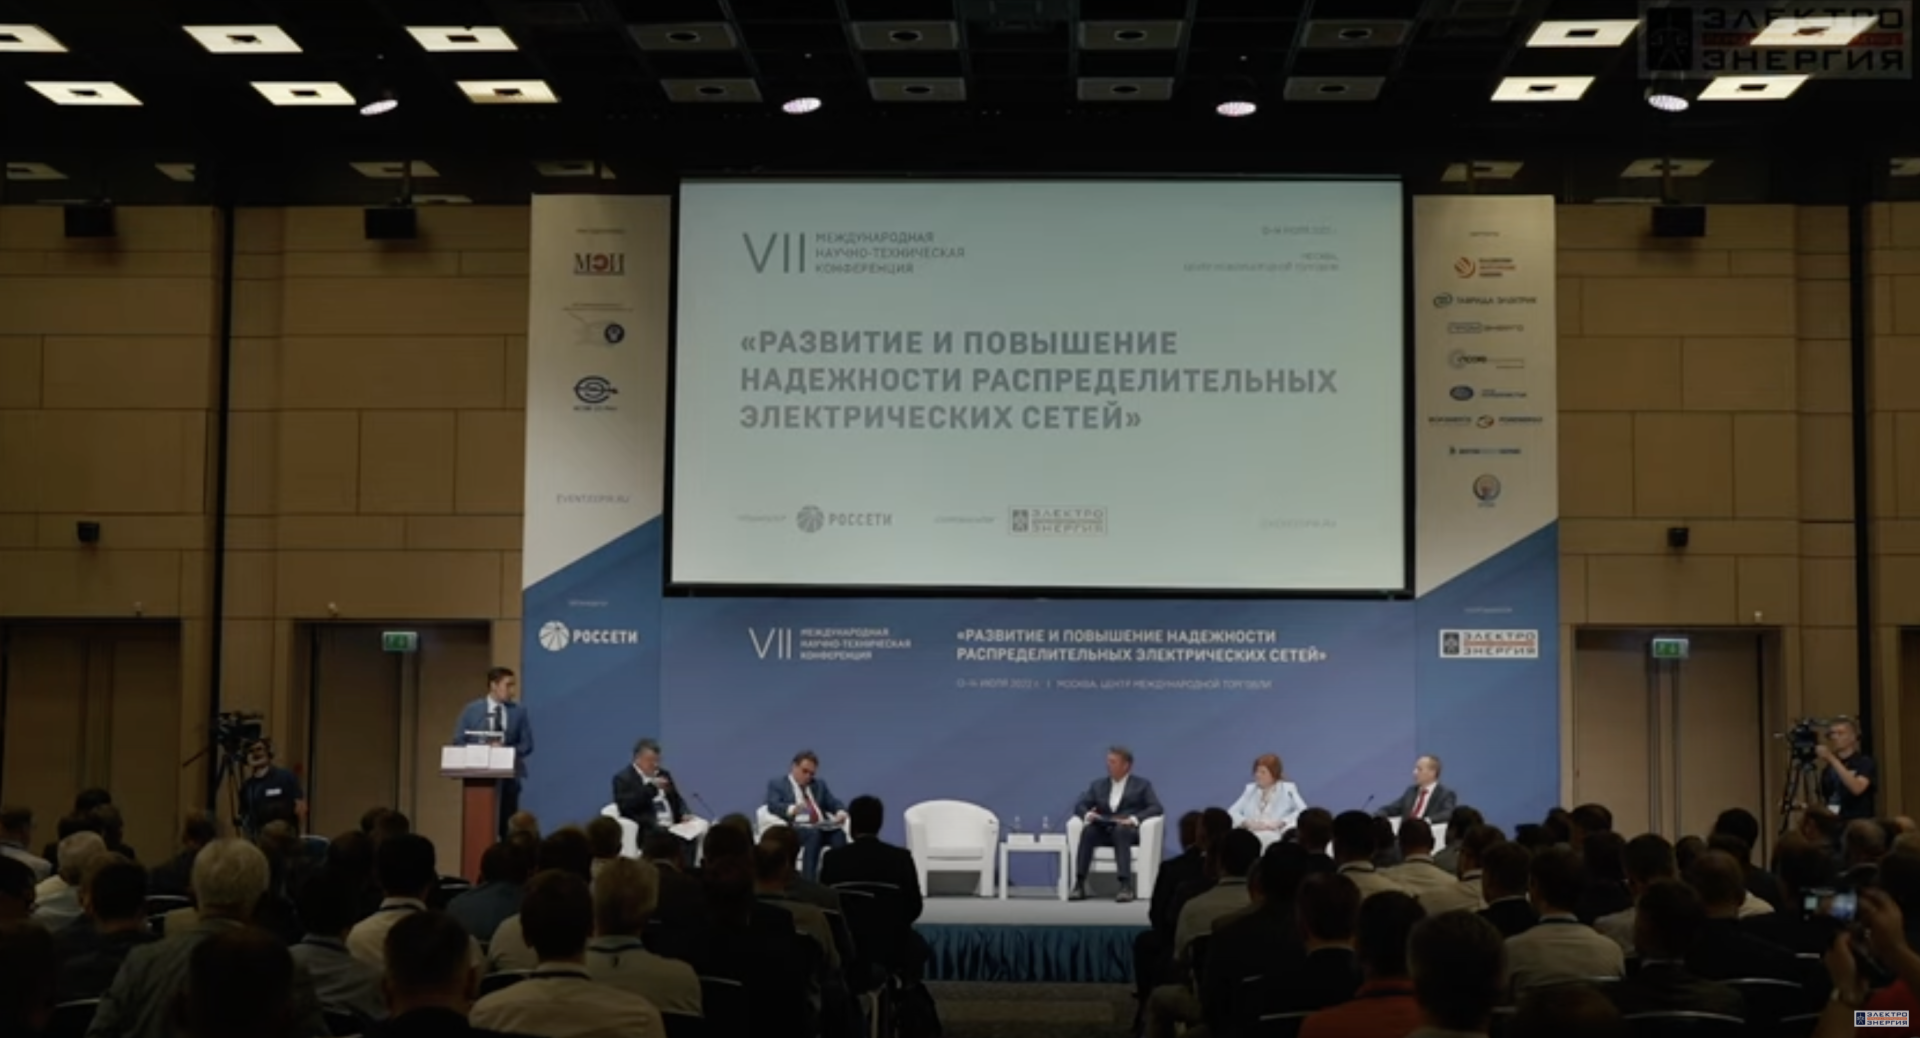 Началась подготовка к VIII Международной научно-технической конференции «Развитие и повышение надежности распределительных электрических сетей»